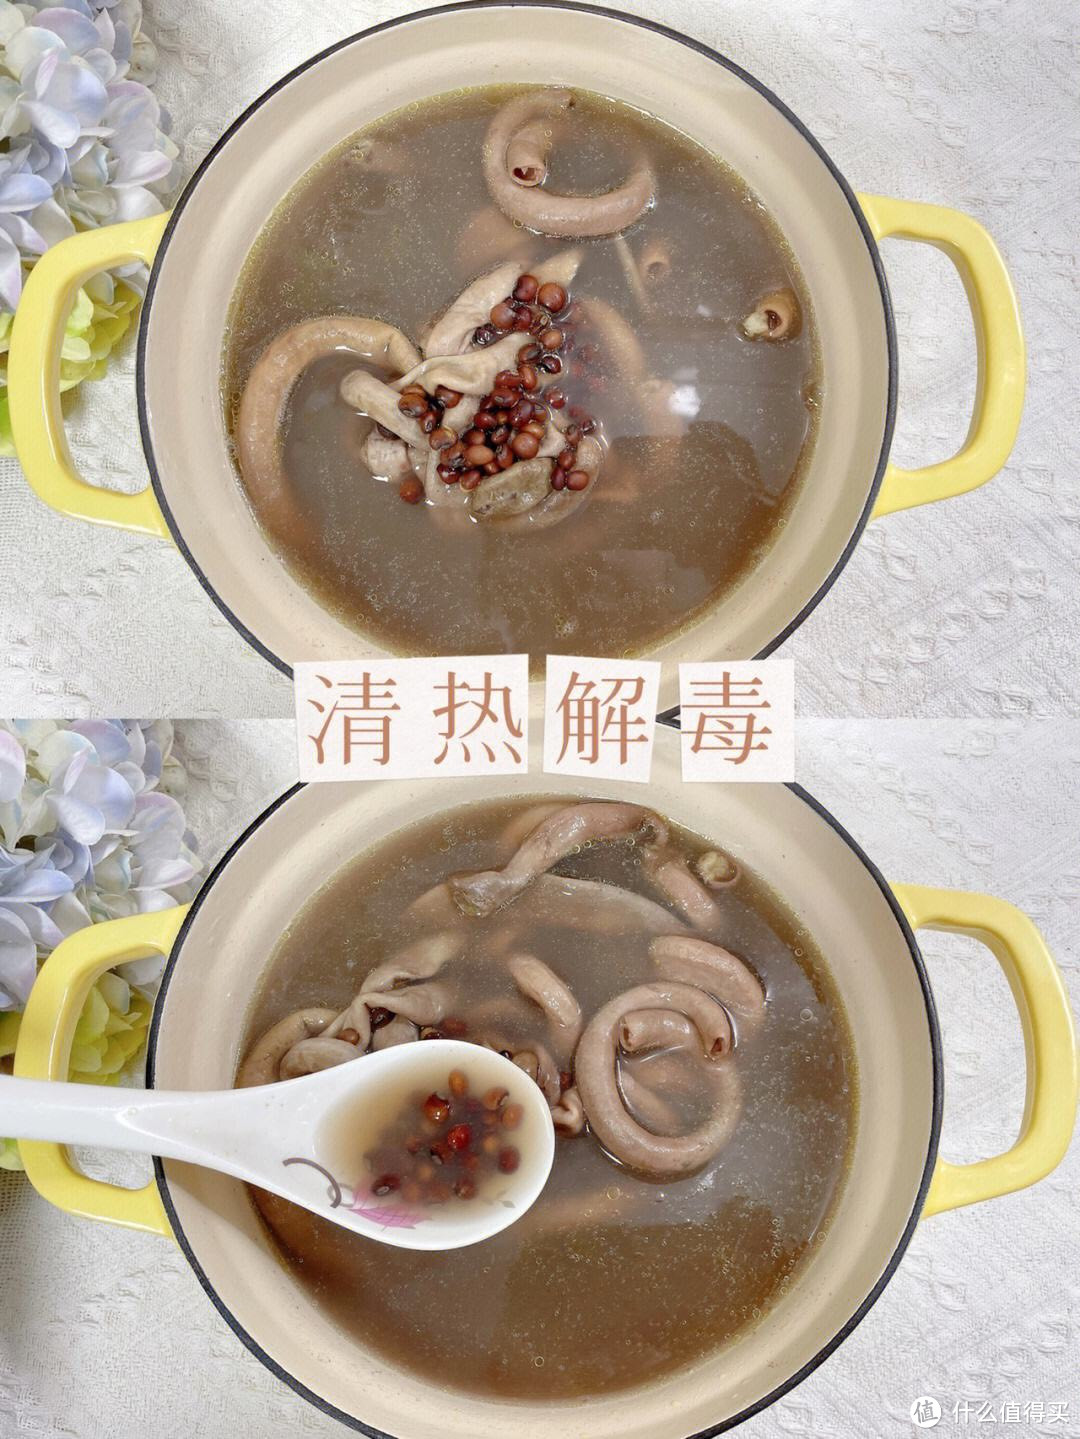 「小肠汤」:治愈心灵的温暖美食